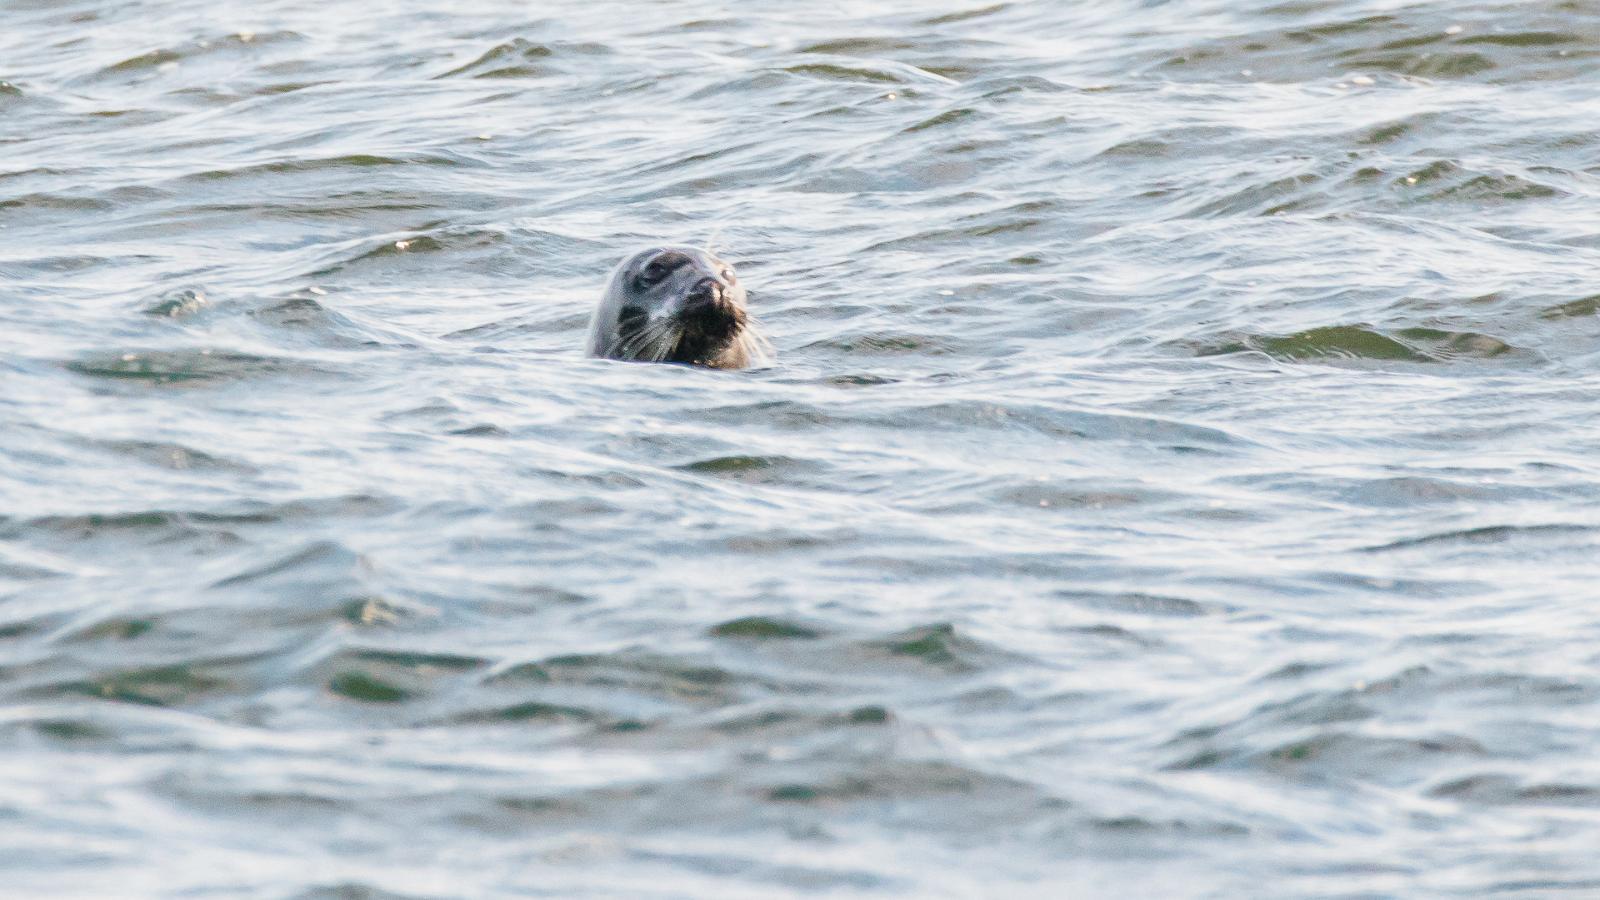 Regulāri roņu vērošanas izbraucieni Kolgas līča arhipelāgā